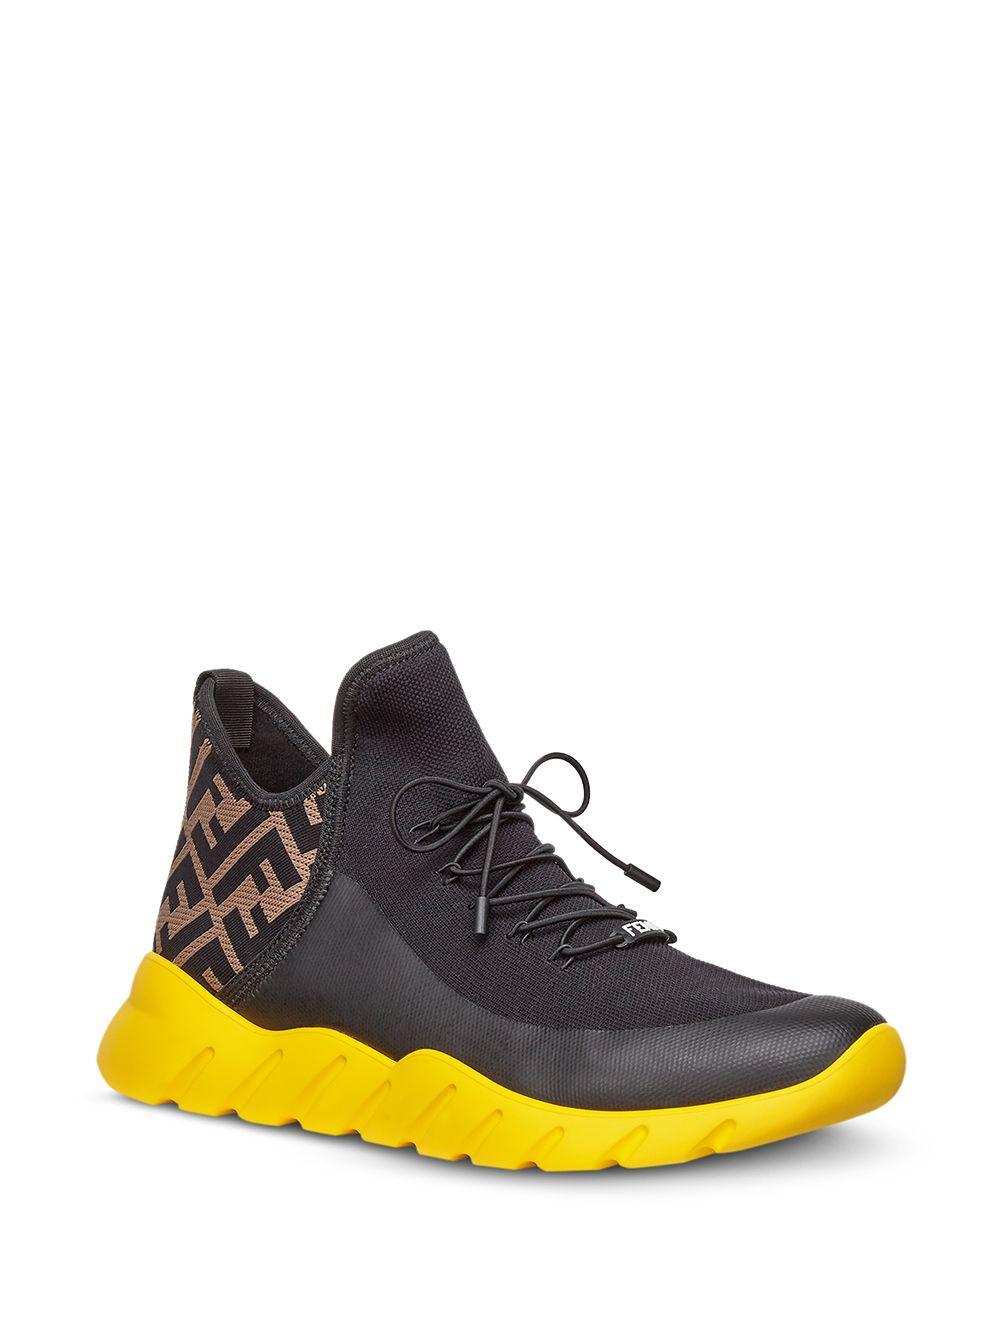 Fendi Cotton Tech Knit Ff Sneakers in Black for Men - Lyst